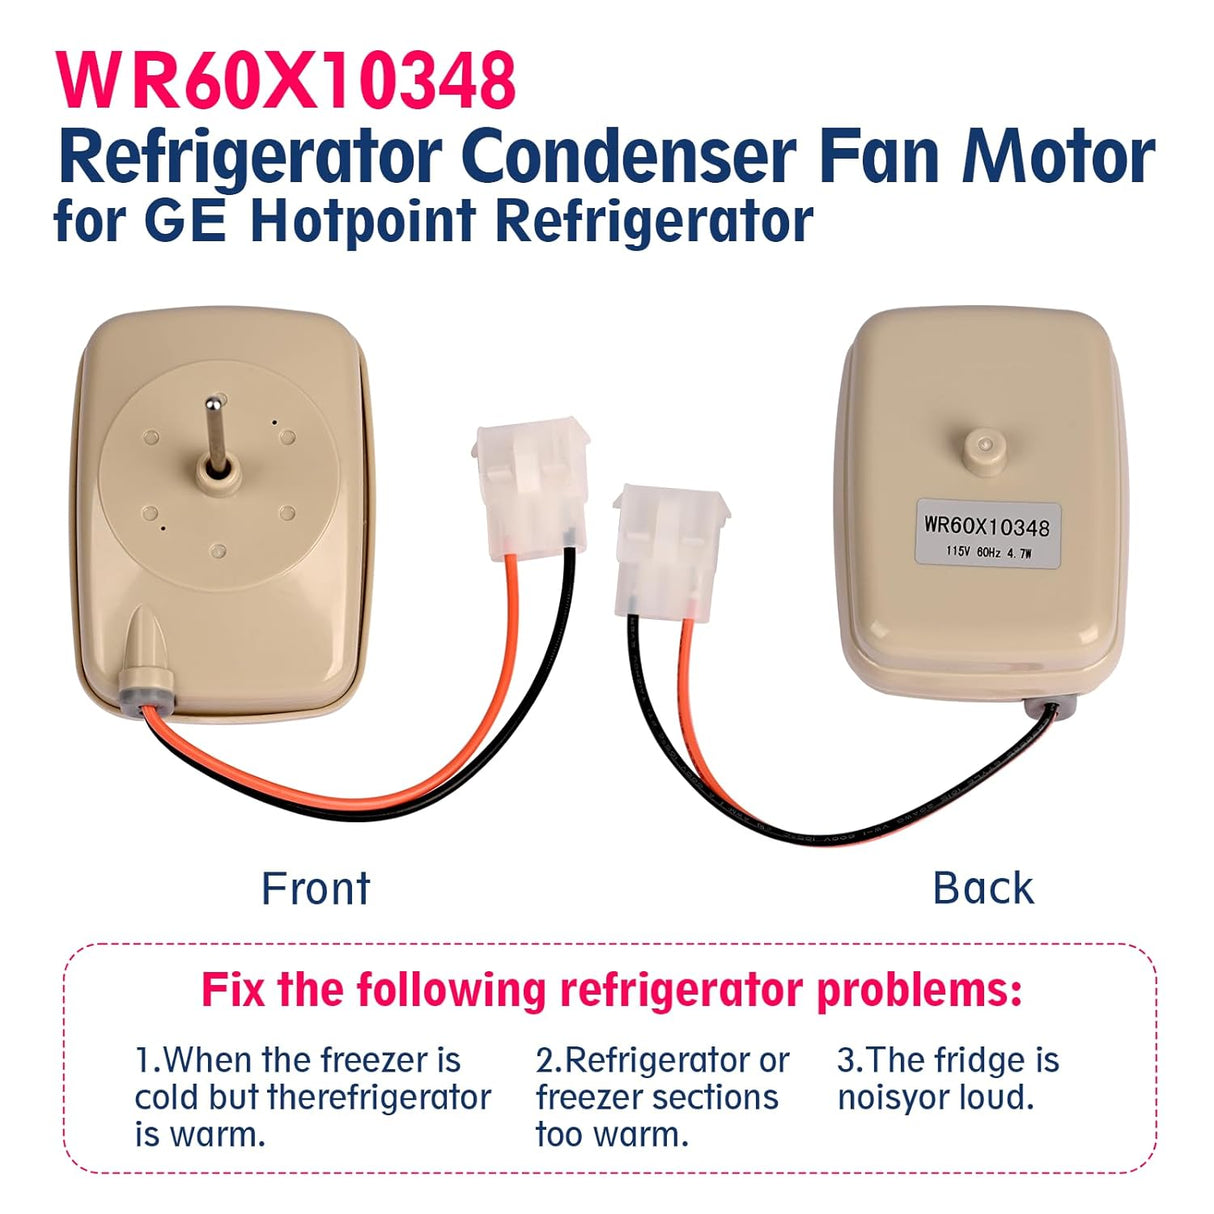 Refrigerator Condenser Fan Motor